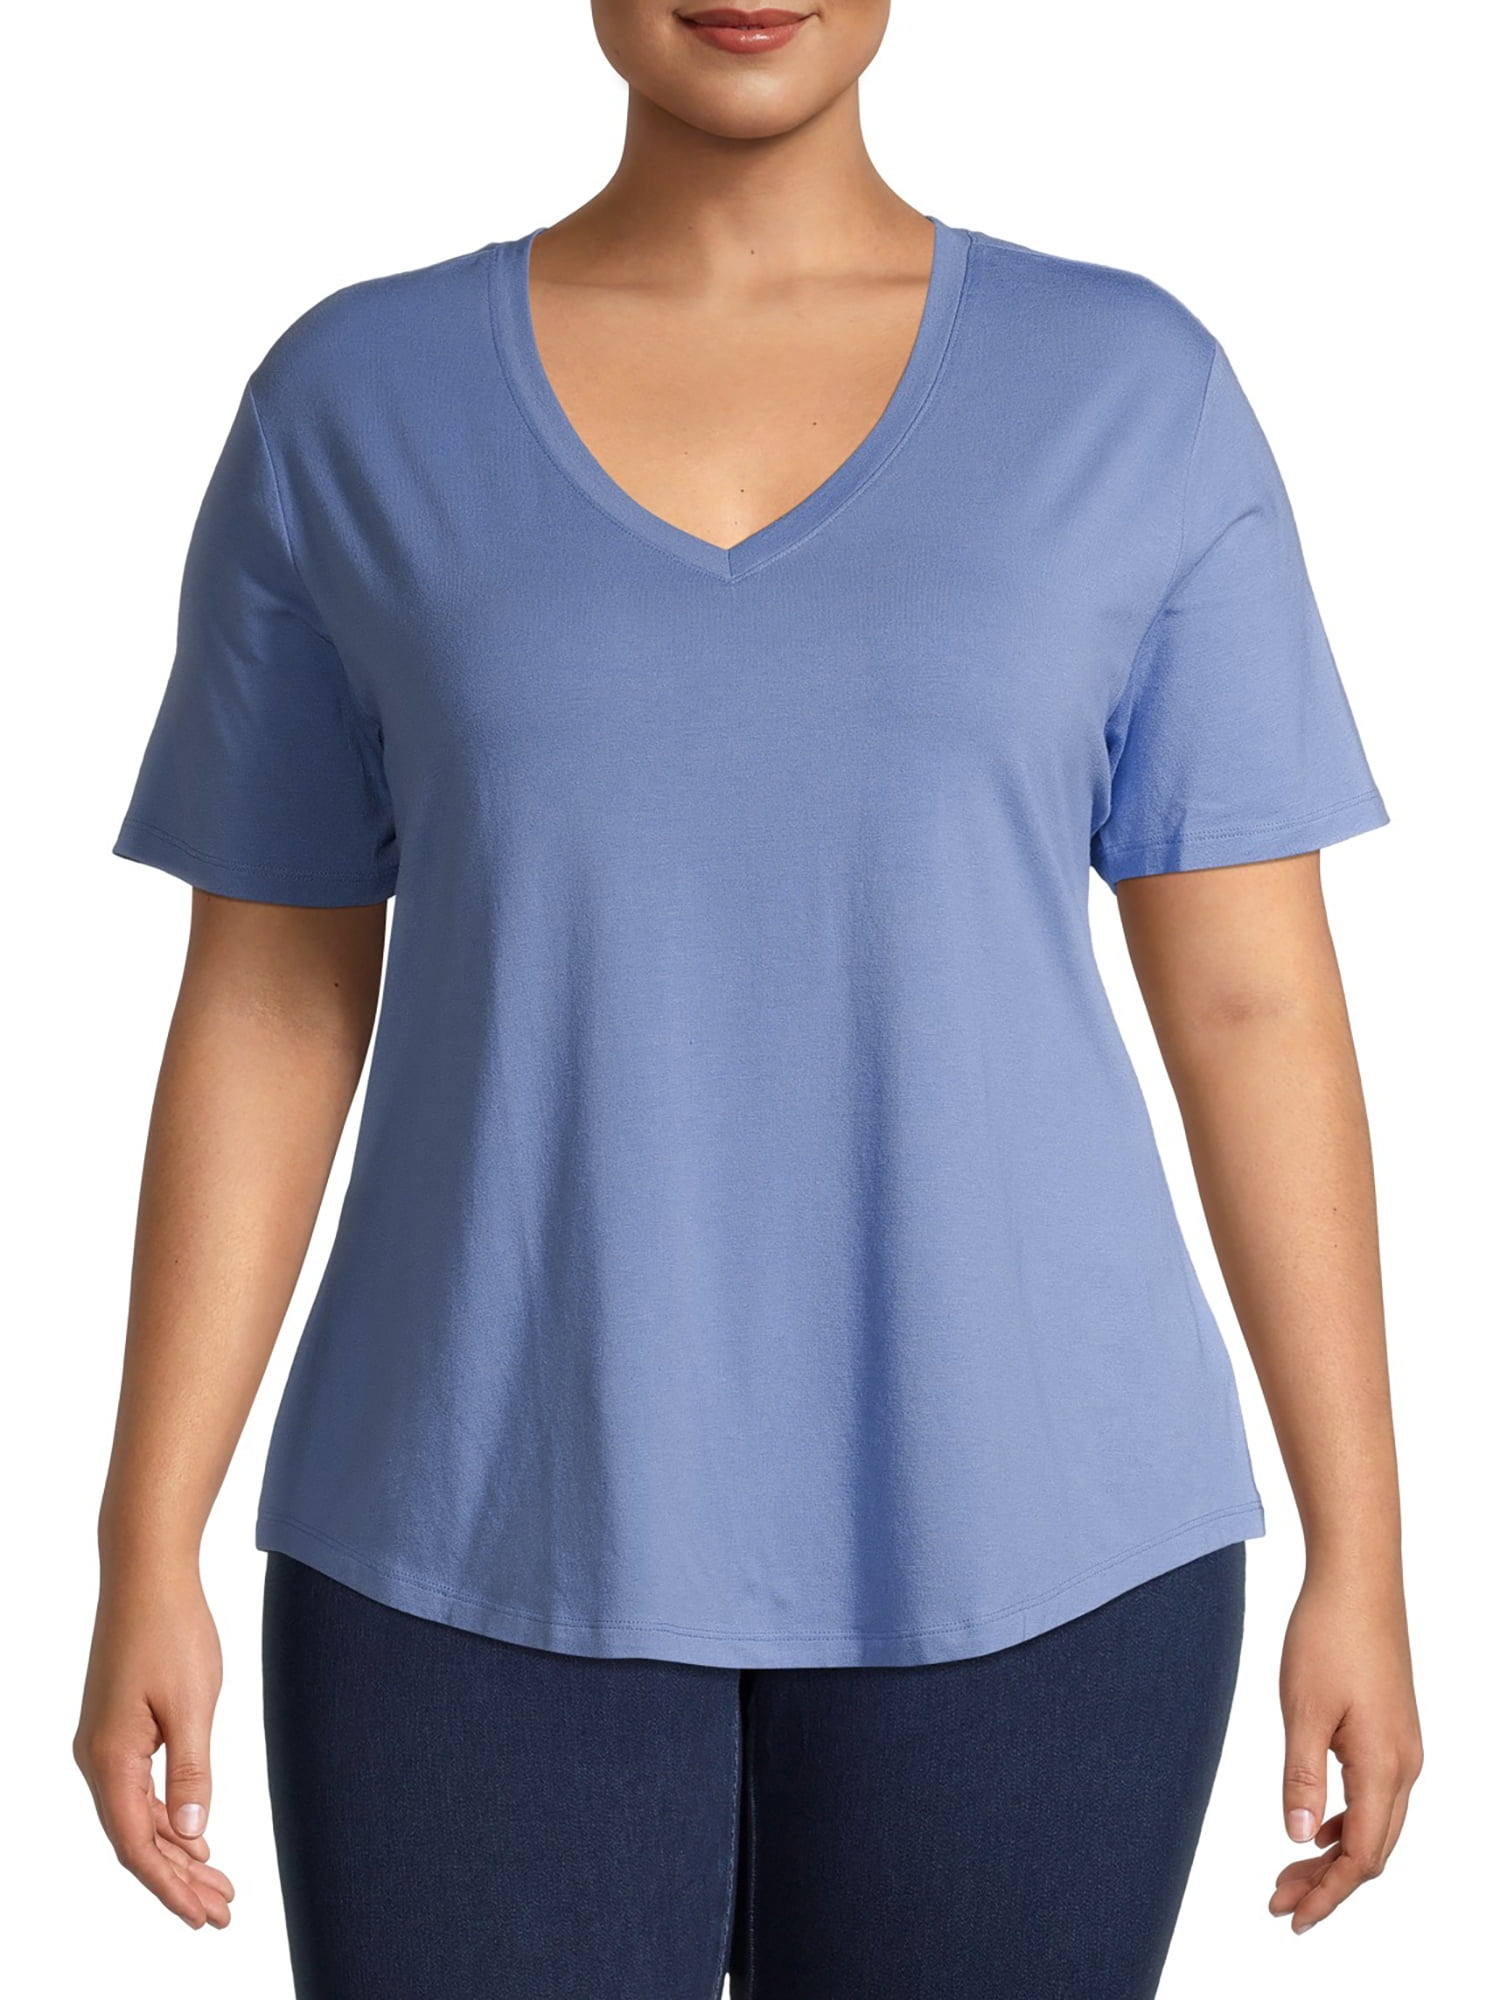 Terra & Sky - Terra & Sky Women's Plus Size Short Sleeve V-Neck T-Shirt ...